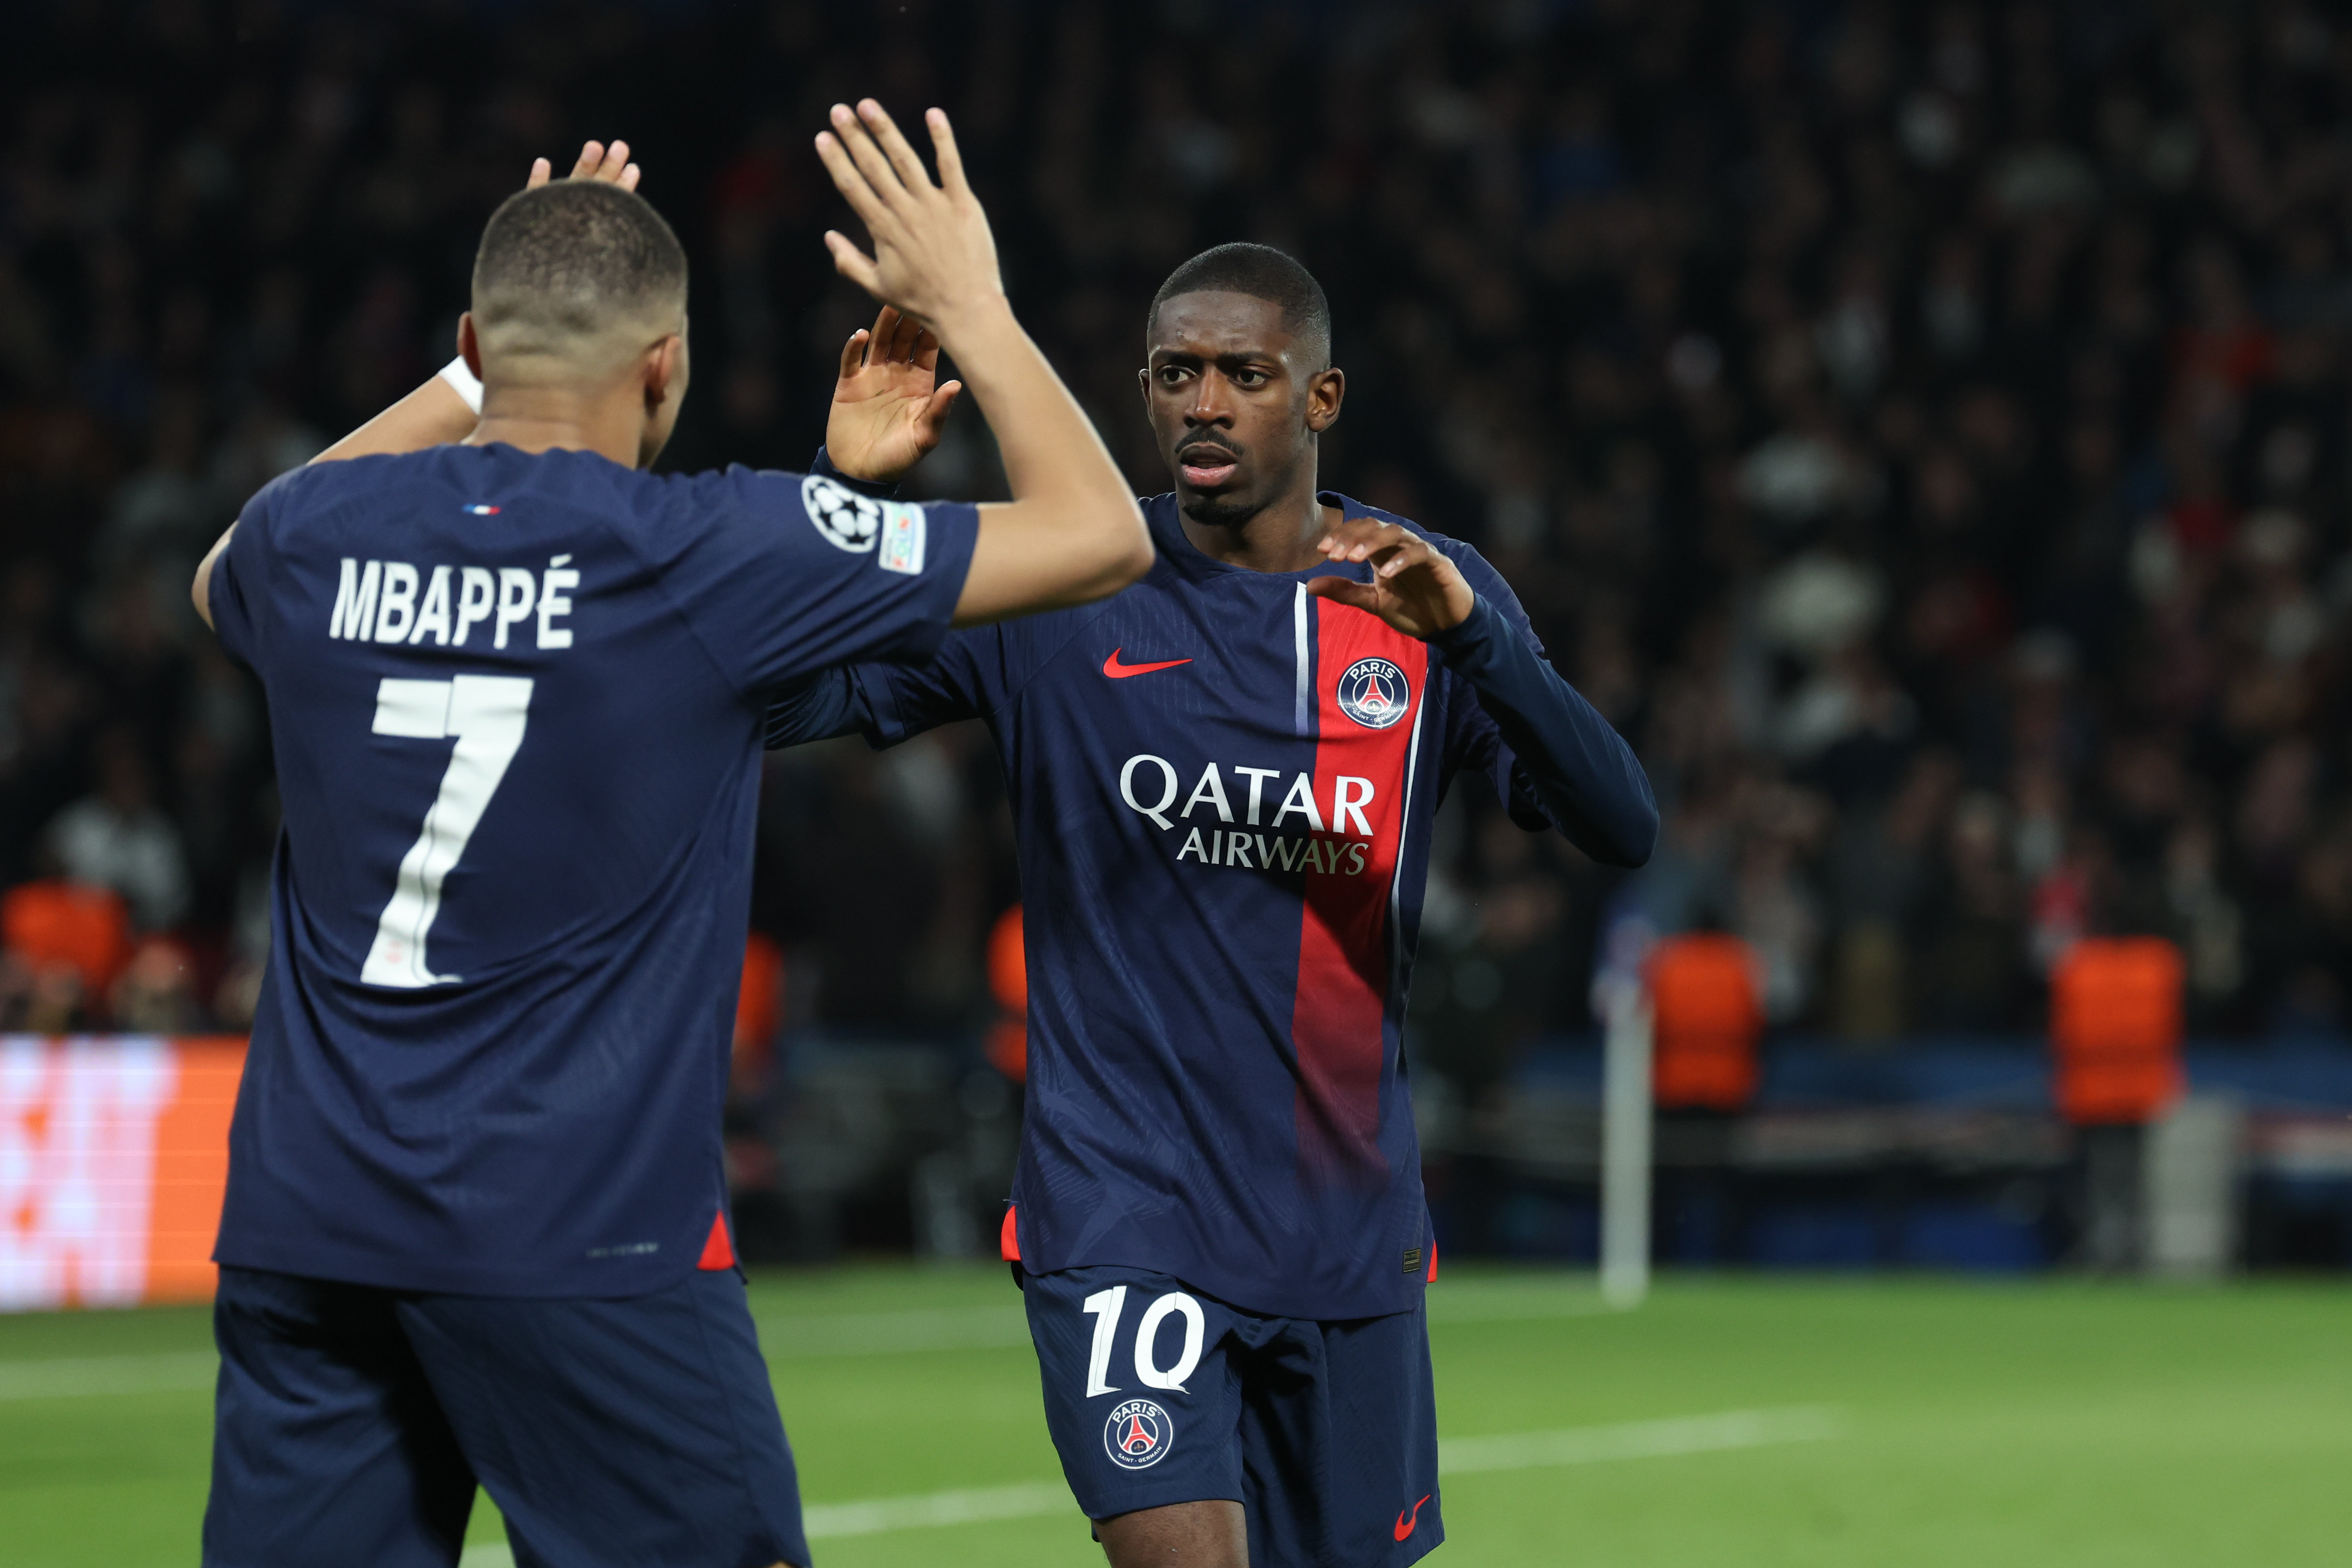 Kylian Mbappé et Ousmane Dembélé portent le Paris Saint-Germain cette saison. LP/Arnaud Journois